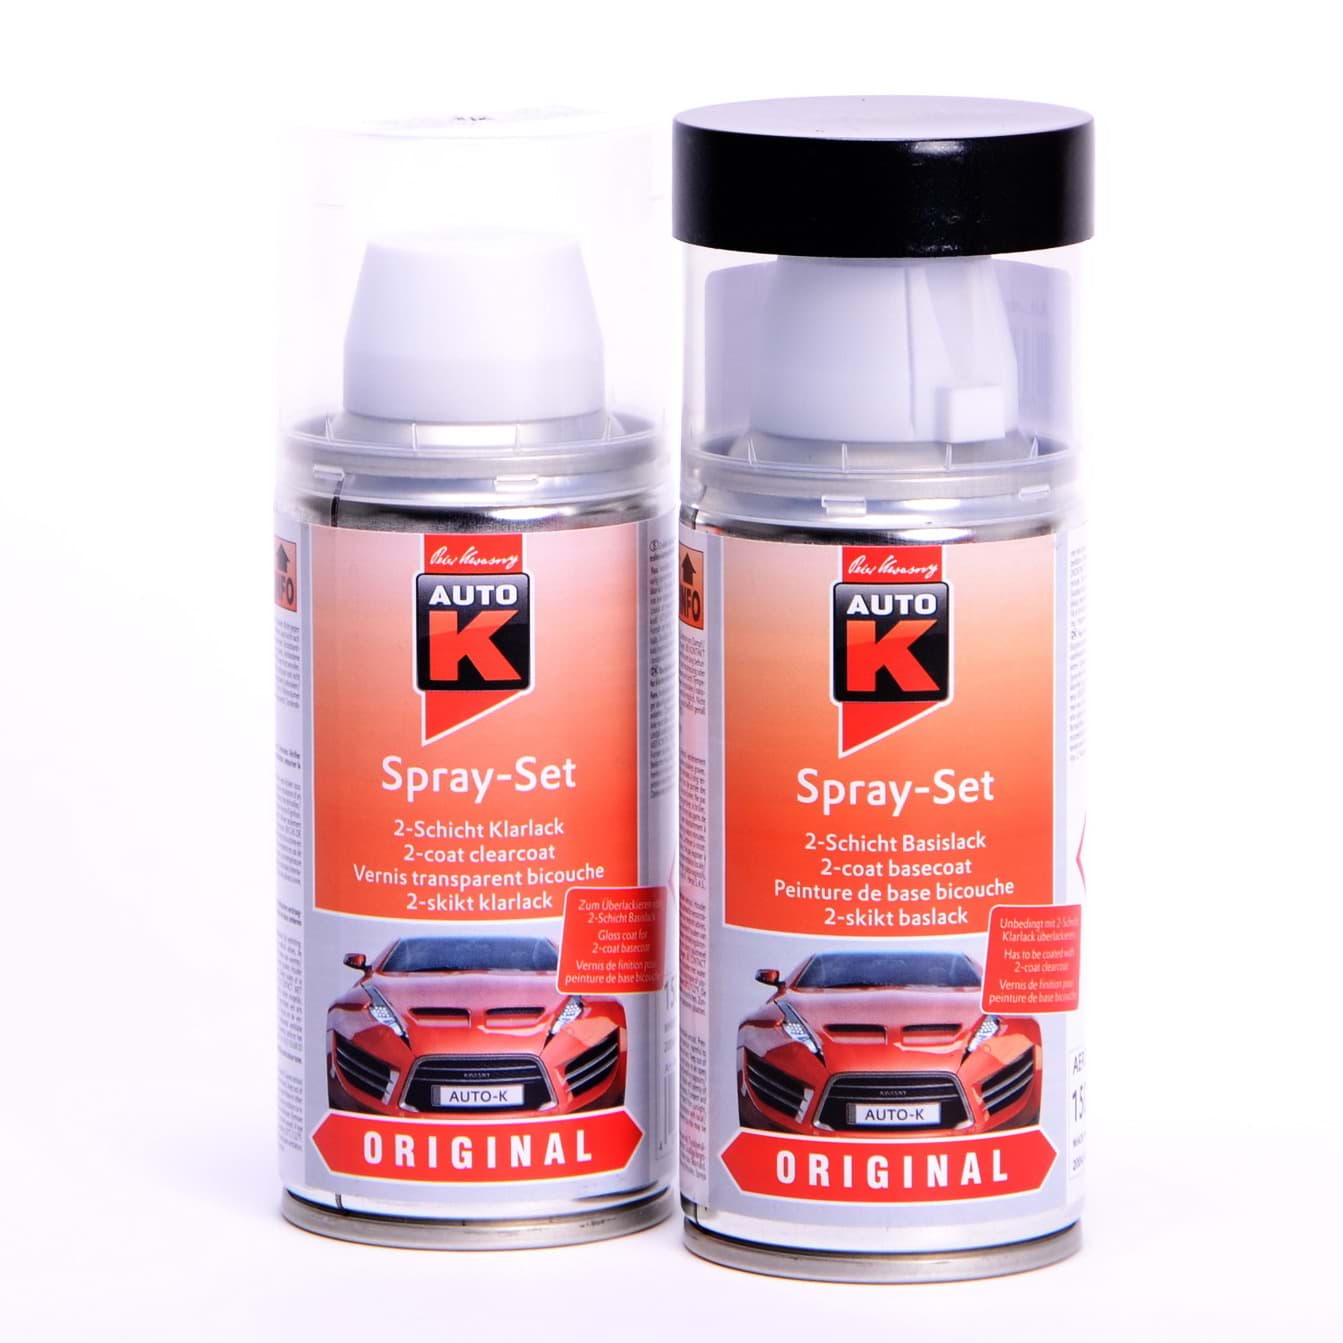 Afbeelding van Auto-K Spray-Set Autolack für BMW 263 Dunkelblau 27254